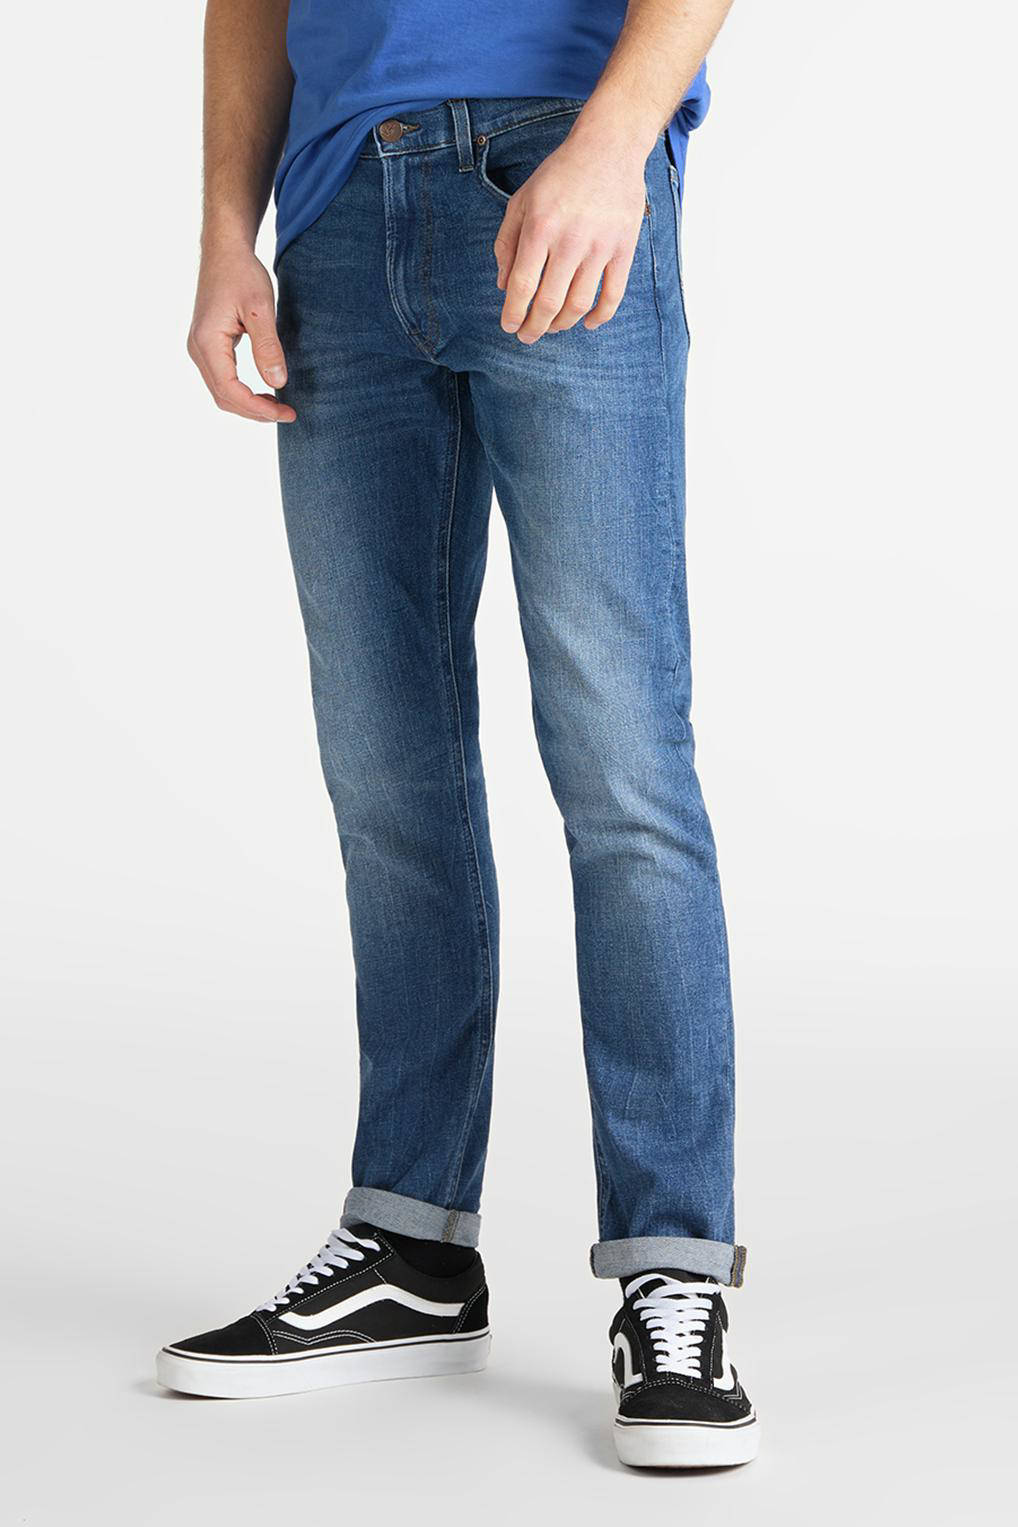 Lee Jeans Denim Nu 20% Korting ® Slim Fit Jeans Luke in het Zwart voor heren Heren Kleding voor voor Jeans voor Bootcut jeans 